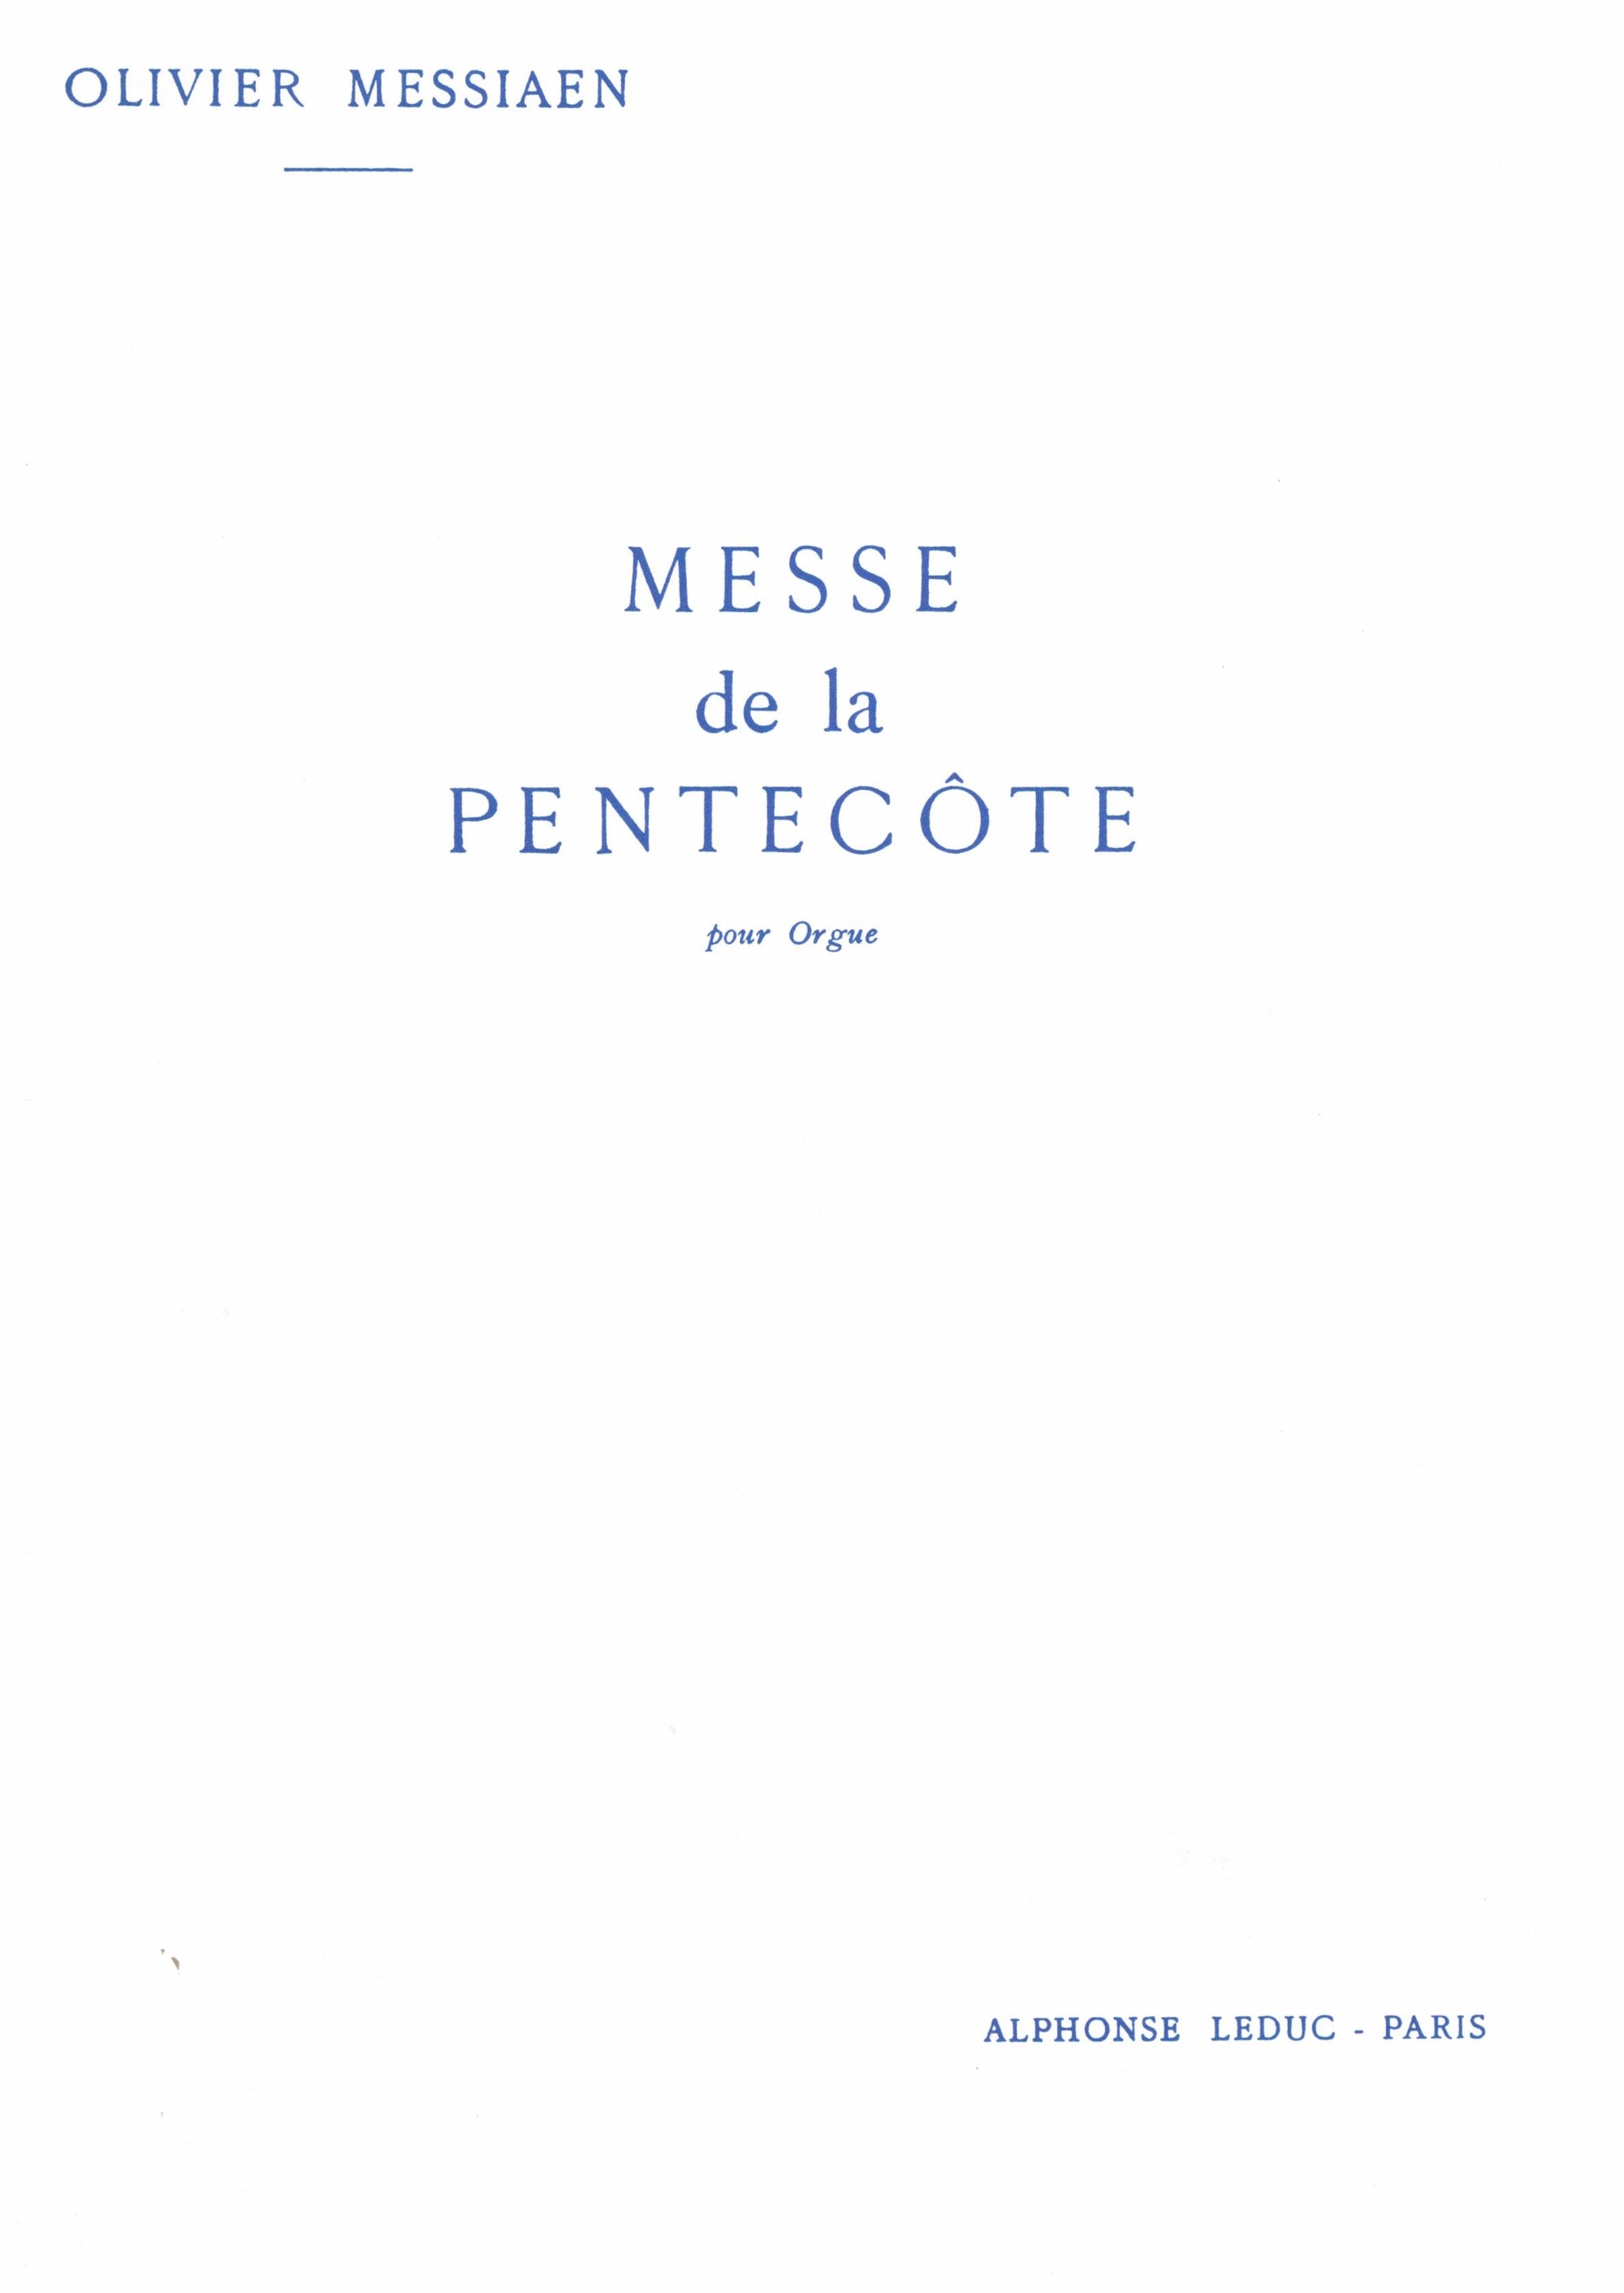 Messiaen: Messe de la Pentecôte